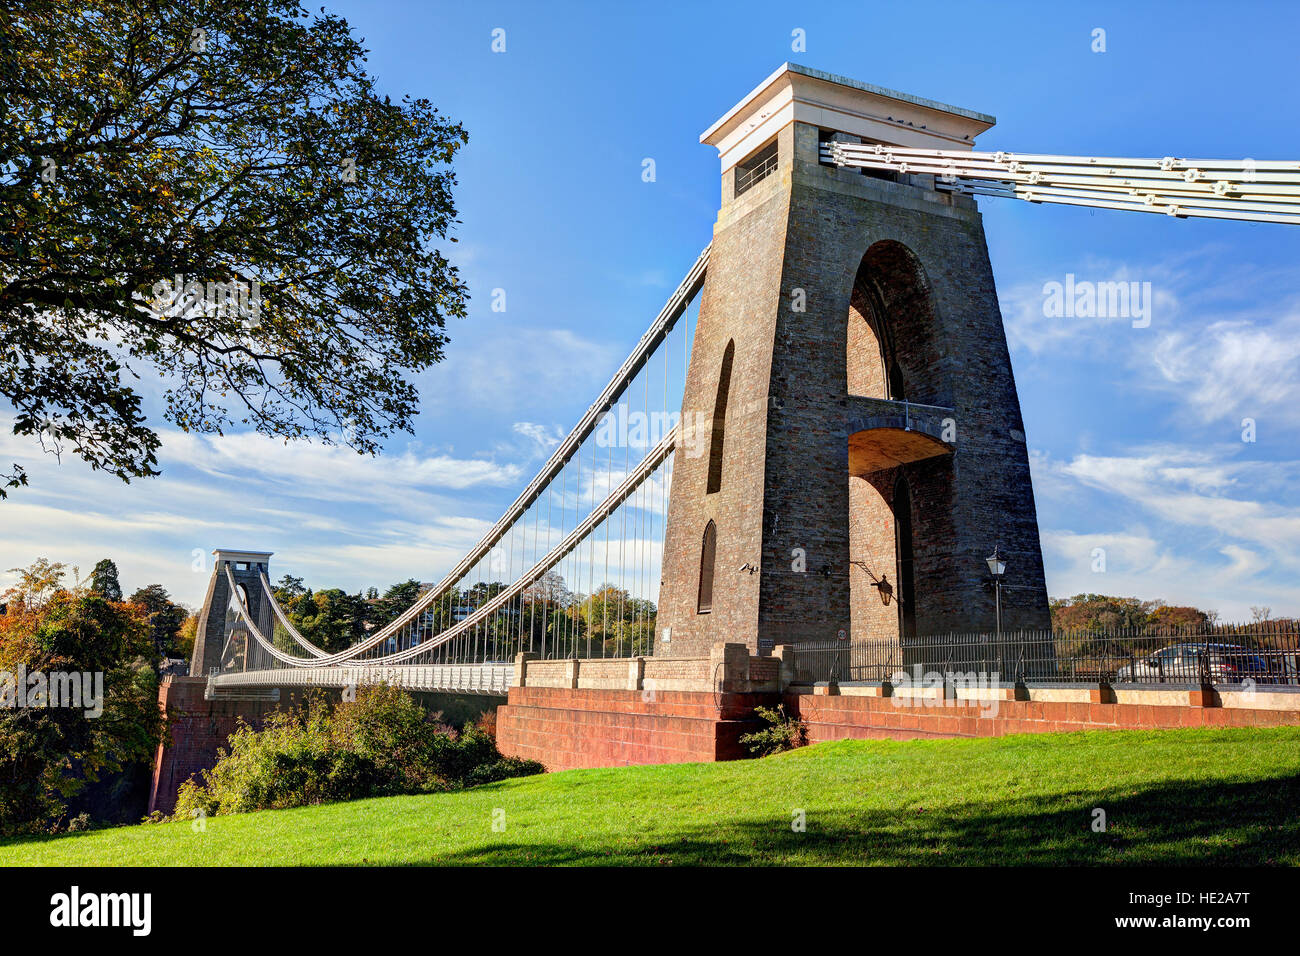 Vue de jour du pont suspendu de Clifton à Bristol, Angleterre Banque D'Images